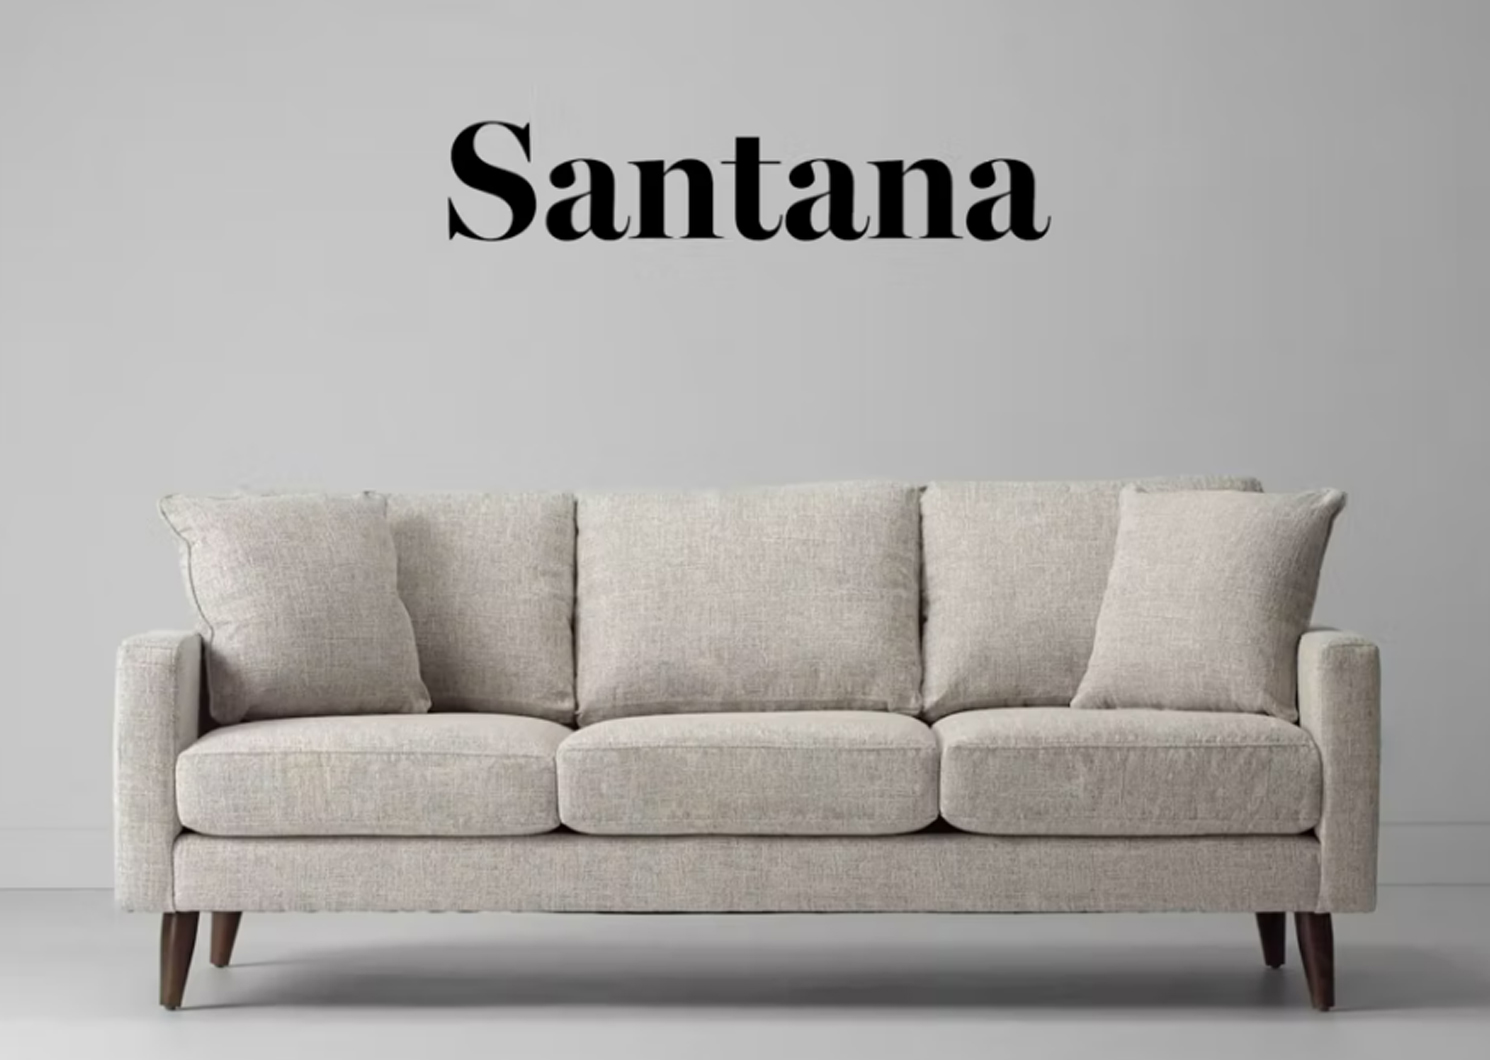 Canapé Santana -Giovanna étain